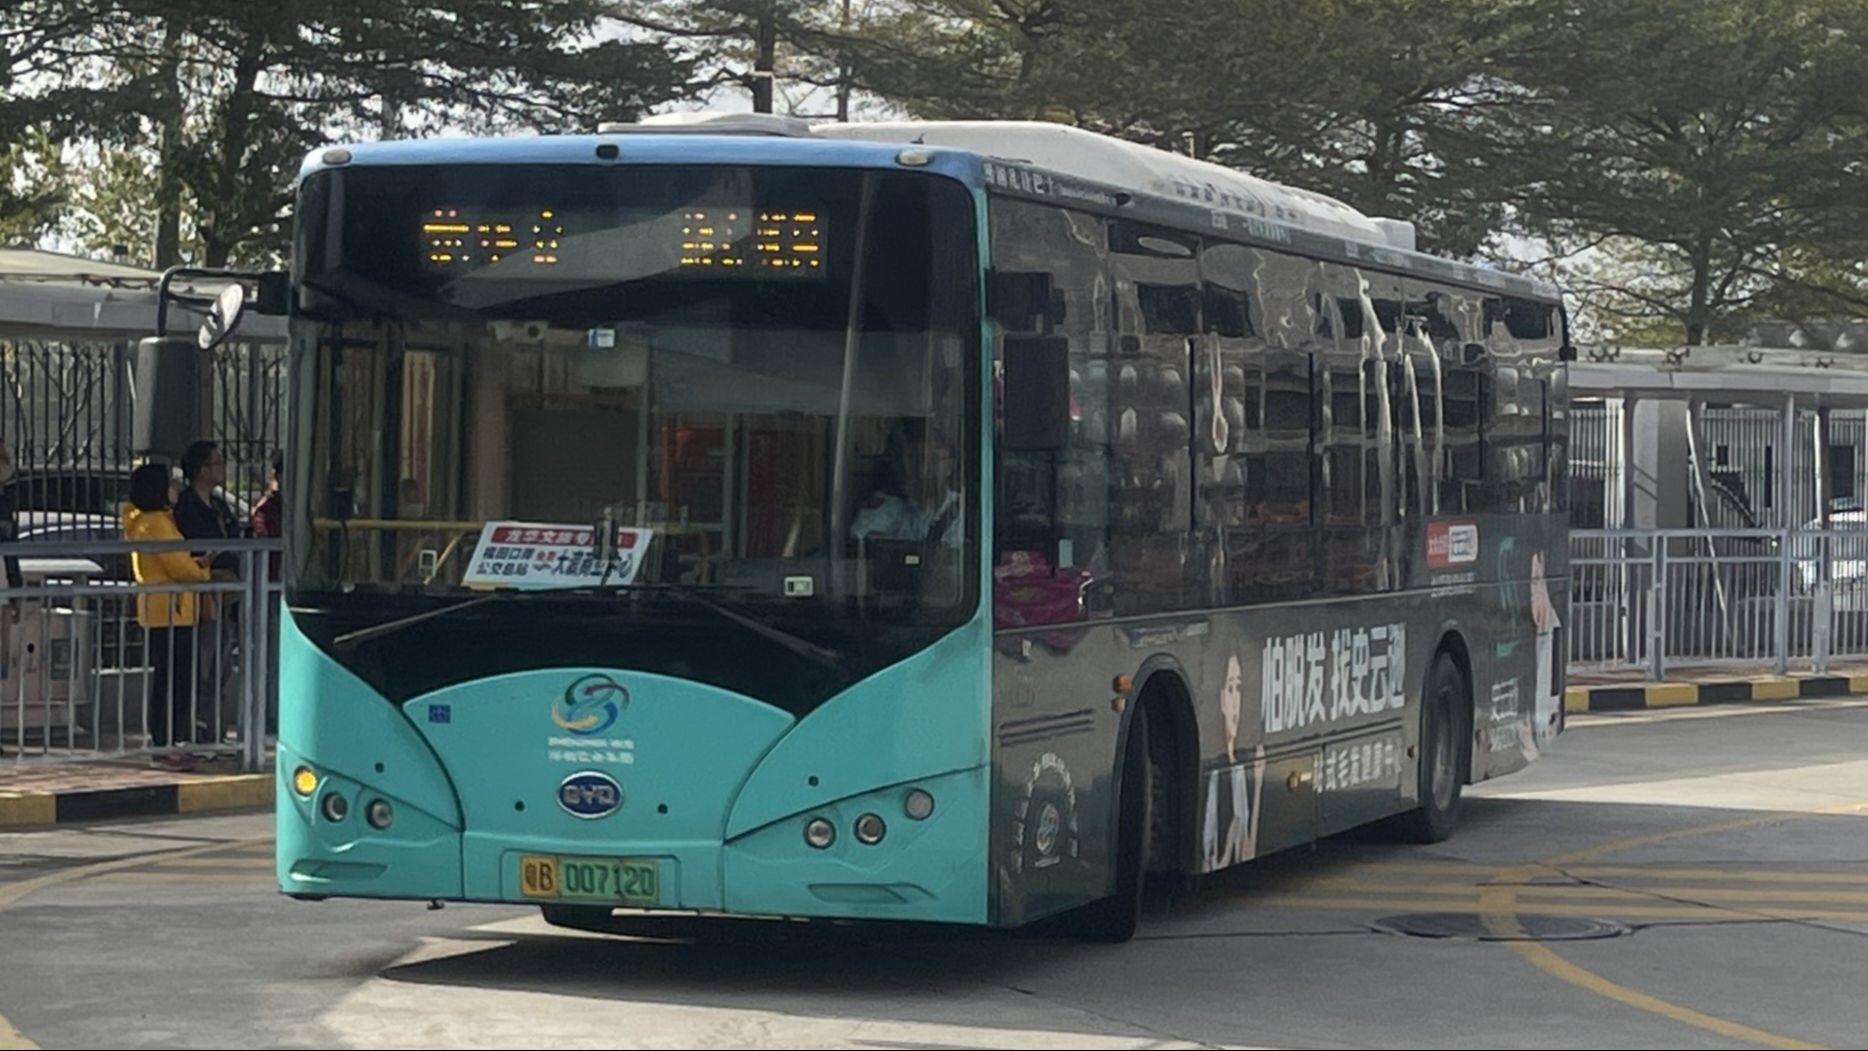 深圳巴士吧pov图片